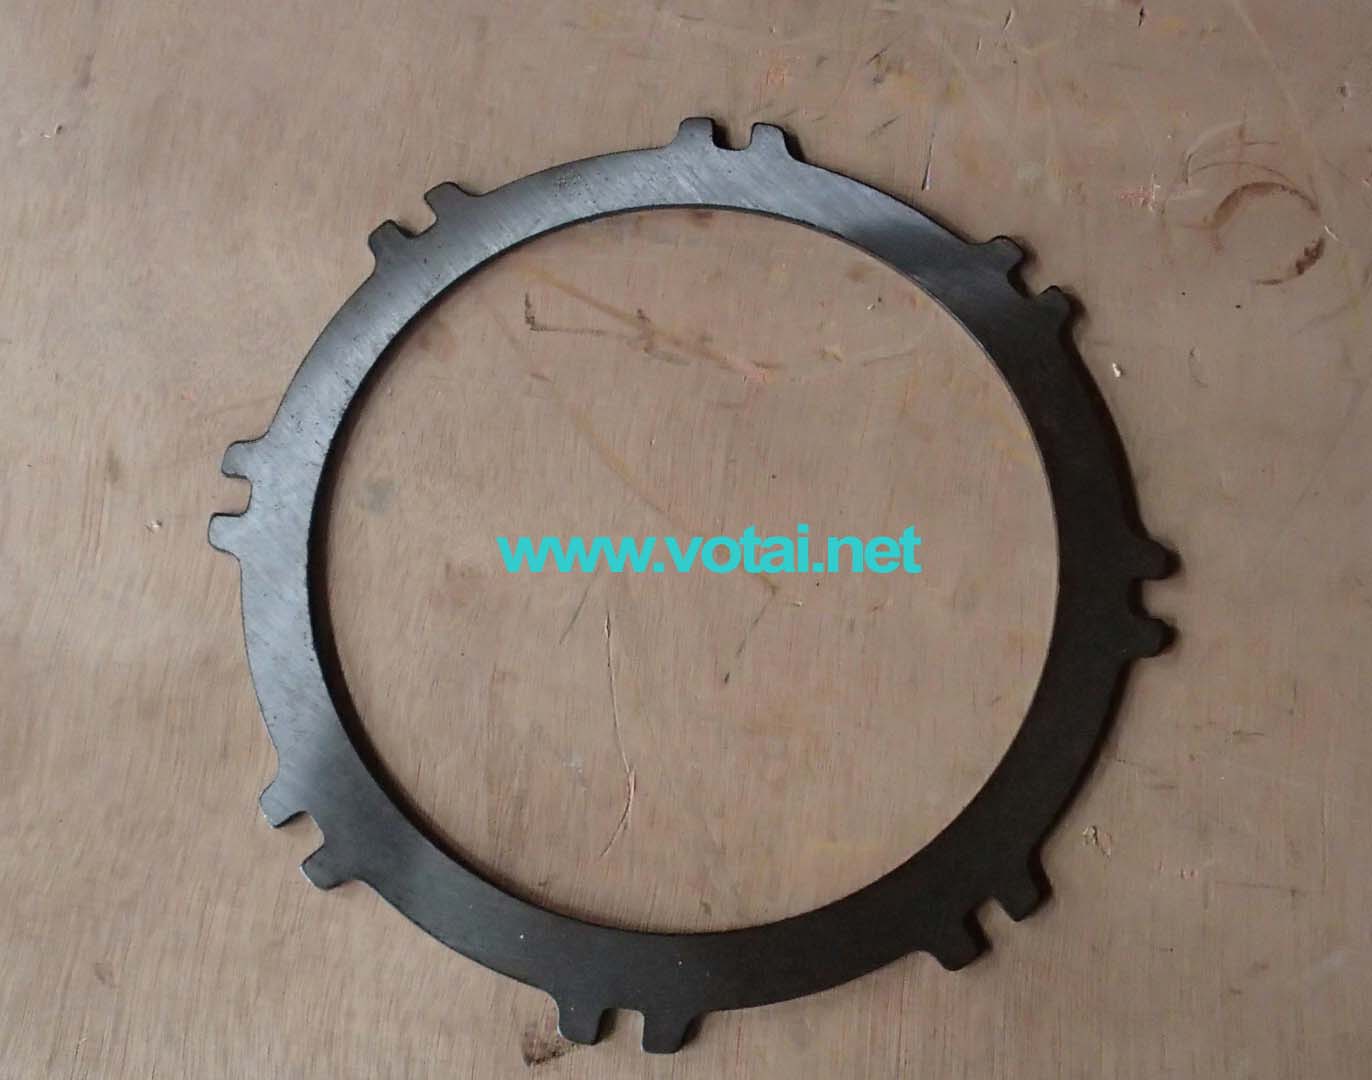 Tianjin Votai - Foton Lovol Wheel Loader Spare Parts Supplier, Foton Lovol FL936, FL958G, FL956, FS816S, FS826D spare parts